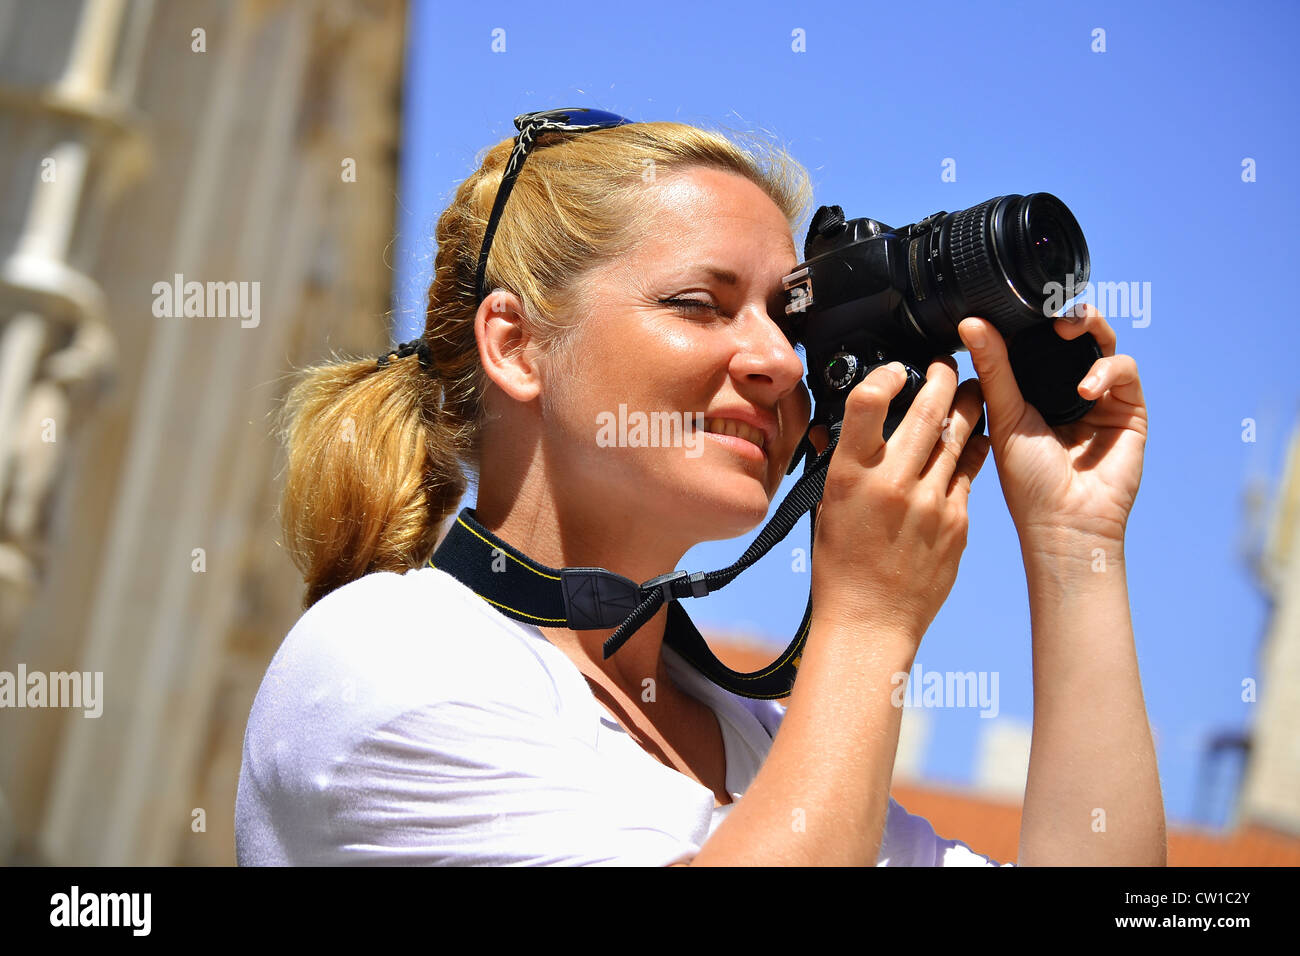 Junge weibliche Touristen mediterrane Altstadt im Urlaub. Frau auf der Straße fotografieren Stockfoto